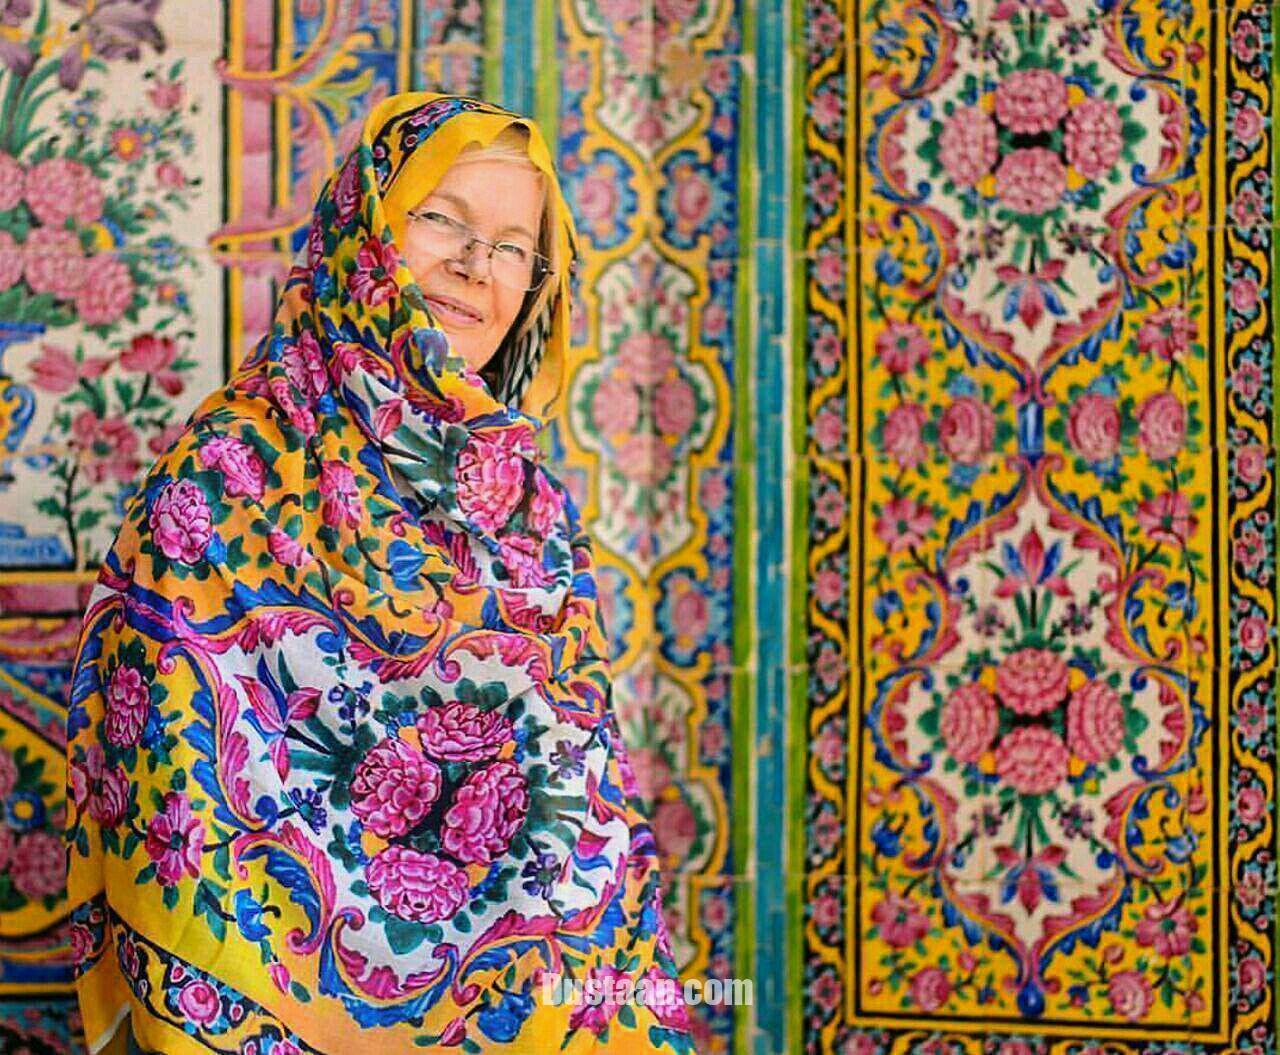 = پوشش گردشگر خارجی در مسجد نصیرالملک شیراز